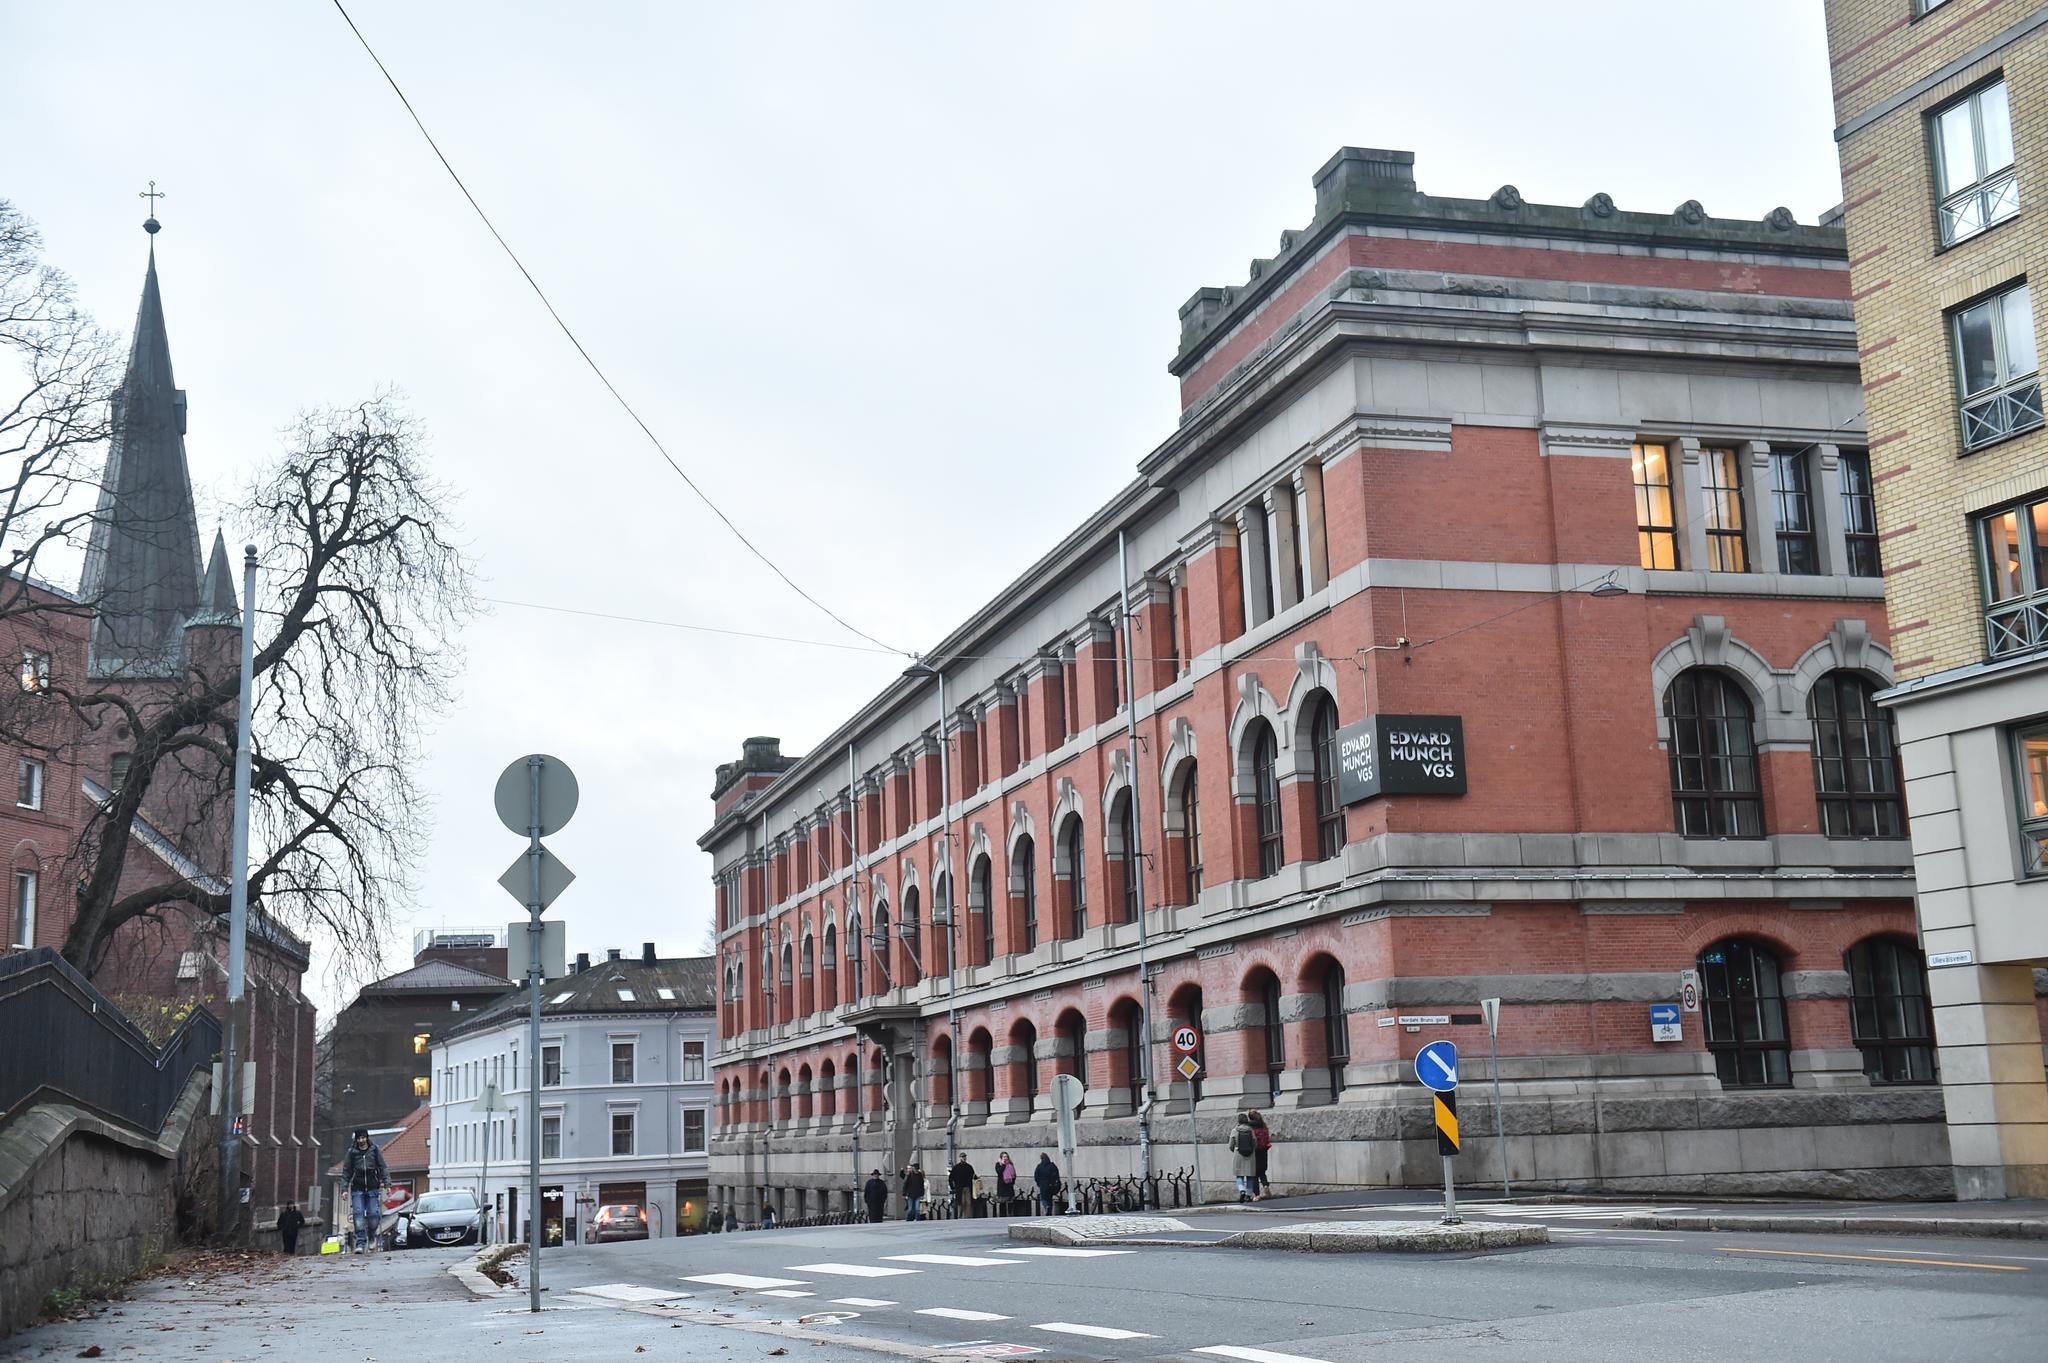 Flere hundre elever var i karantene på den store videregående-skolen Edvard Munch i Oslo denne uken. Det viser tall Aftenposten har hentet inn. 